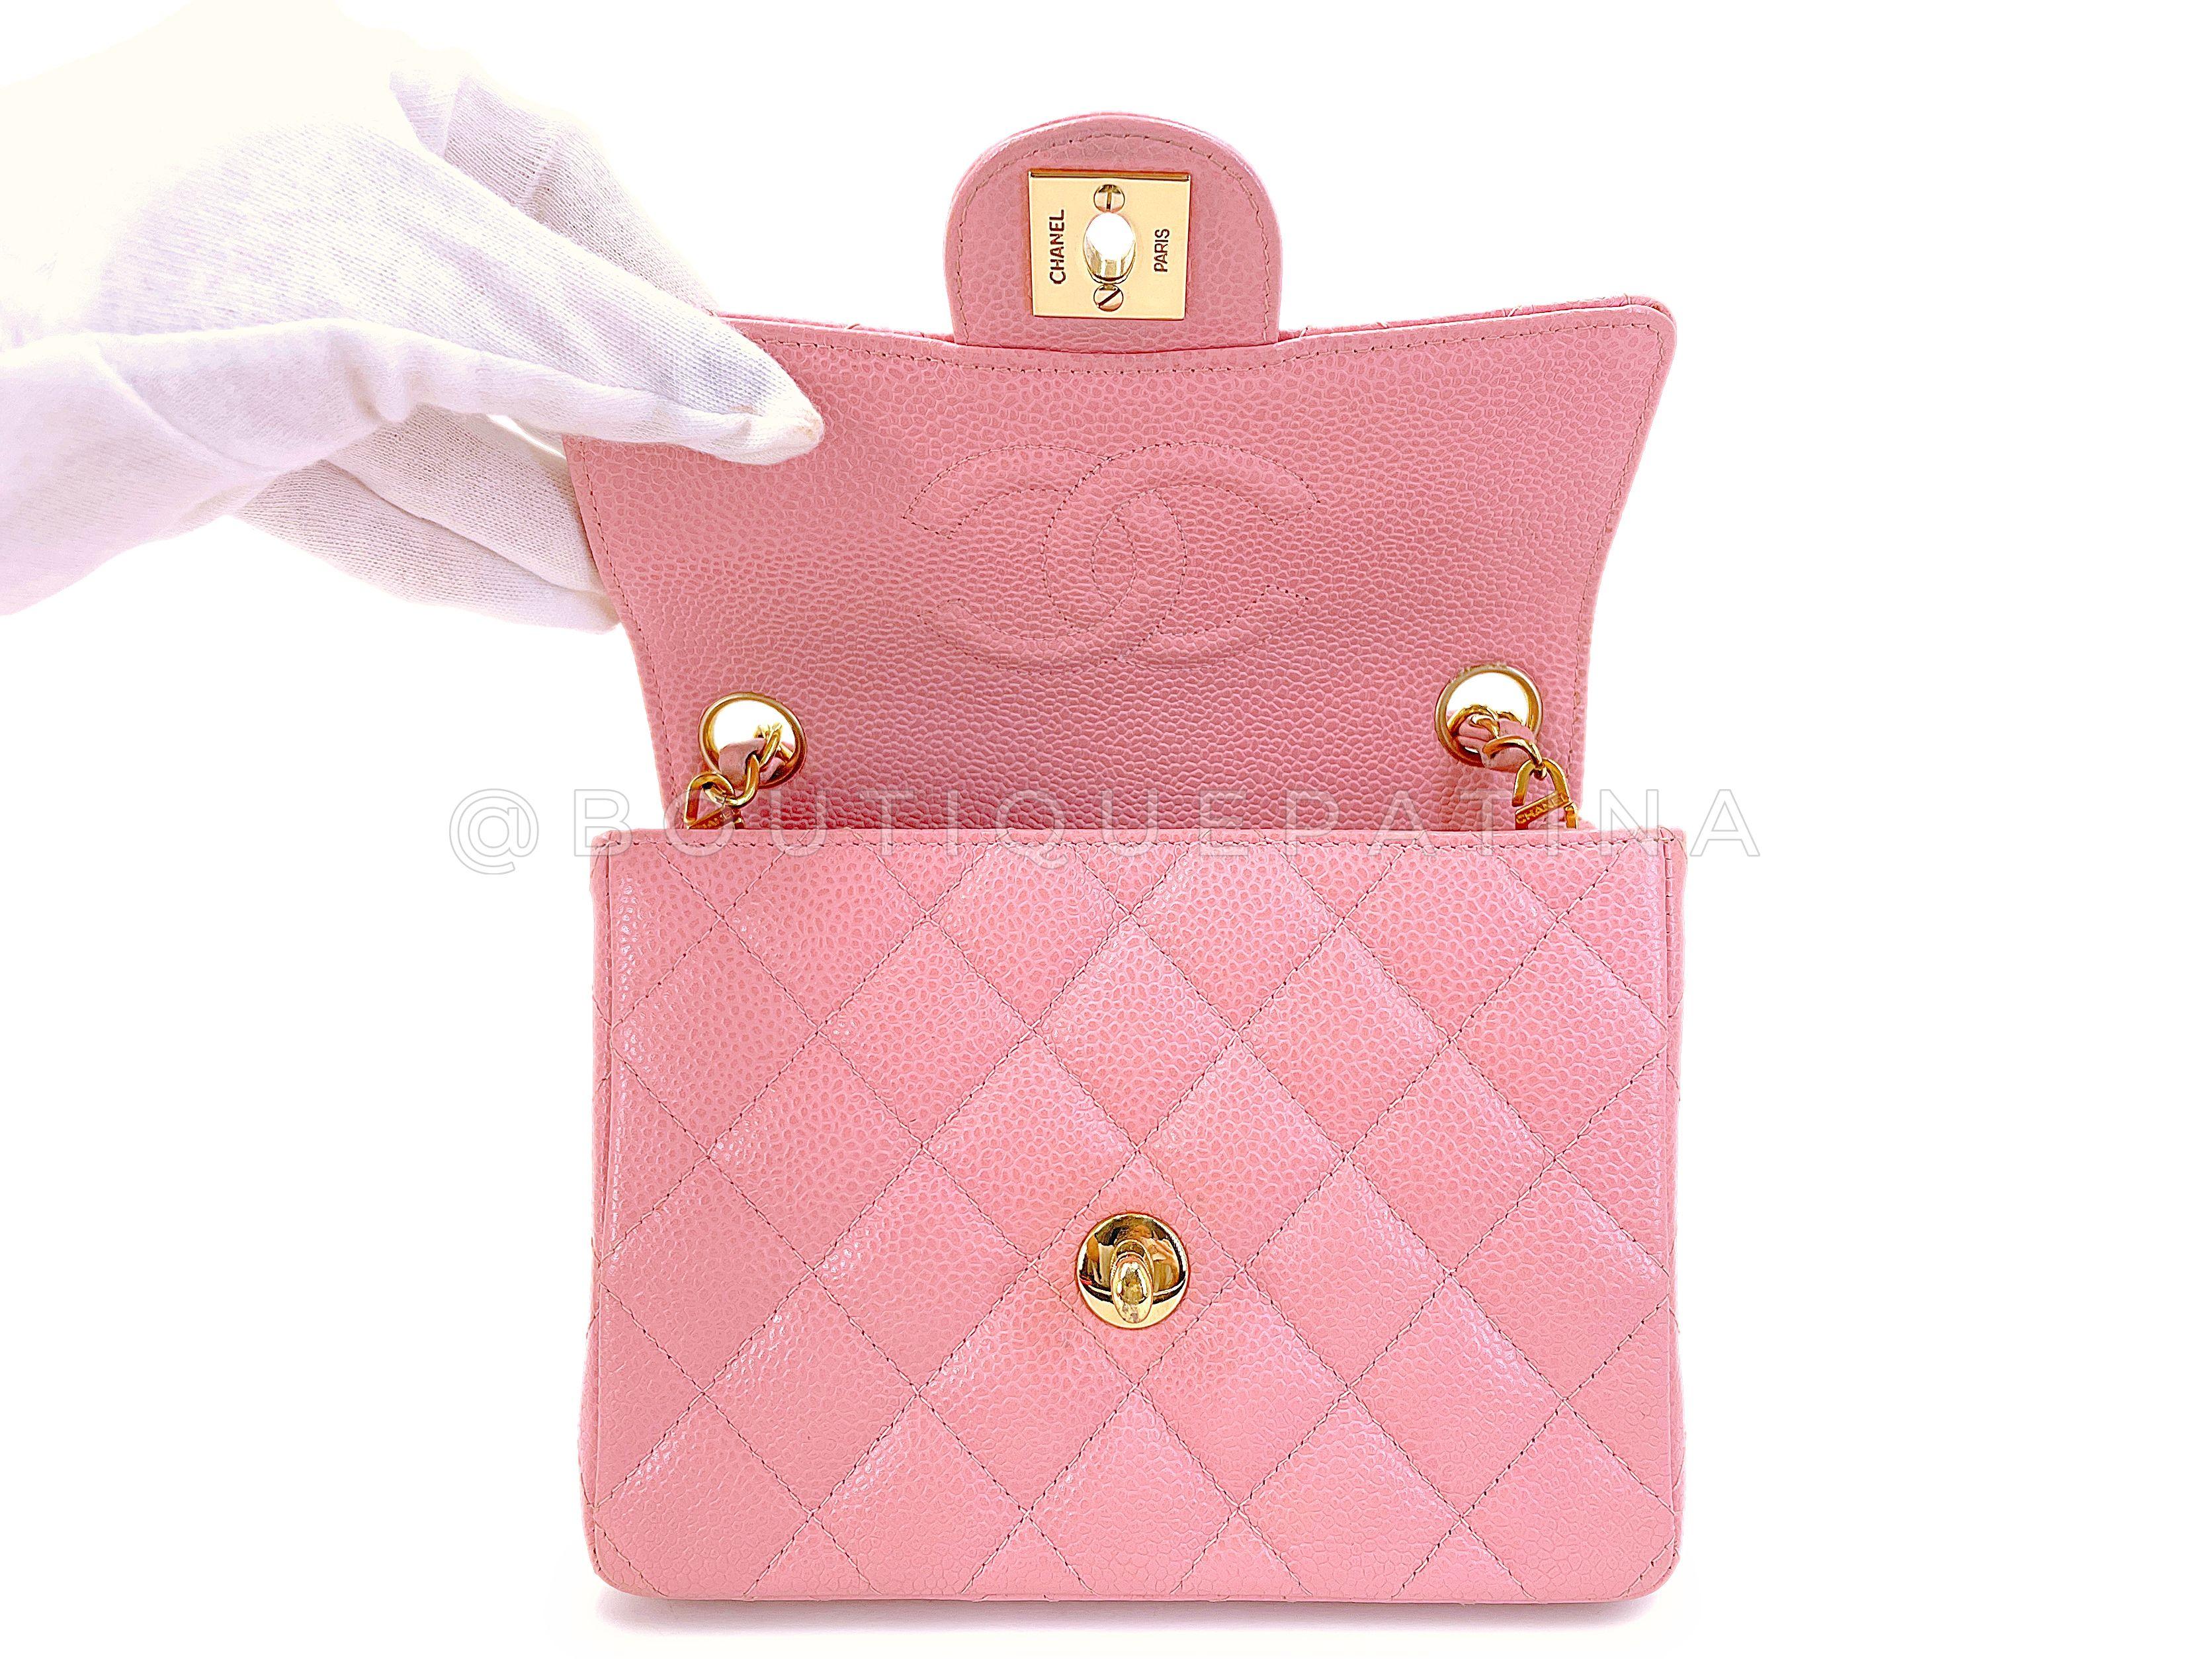 Chanel 2004 Vintage Sakura Pink Square Mini Flap Bag 24k GHW 67727 For Sale 5